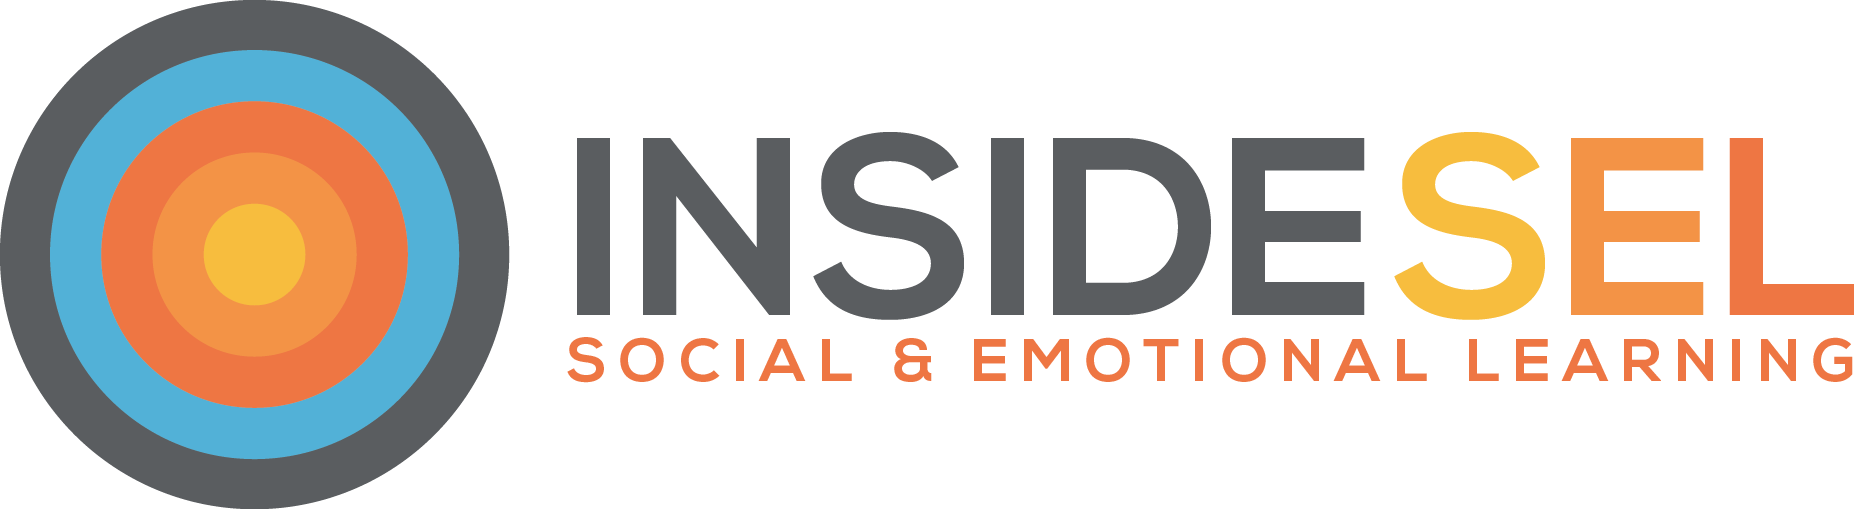 Social emotional learning – Inside SEL